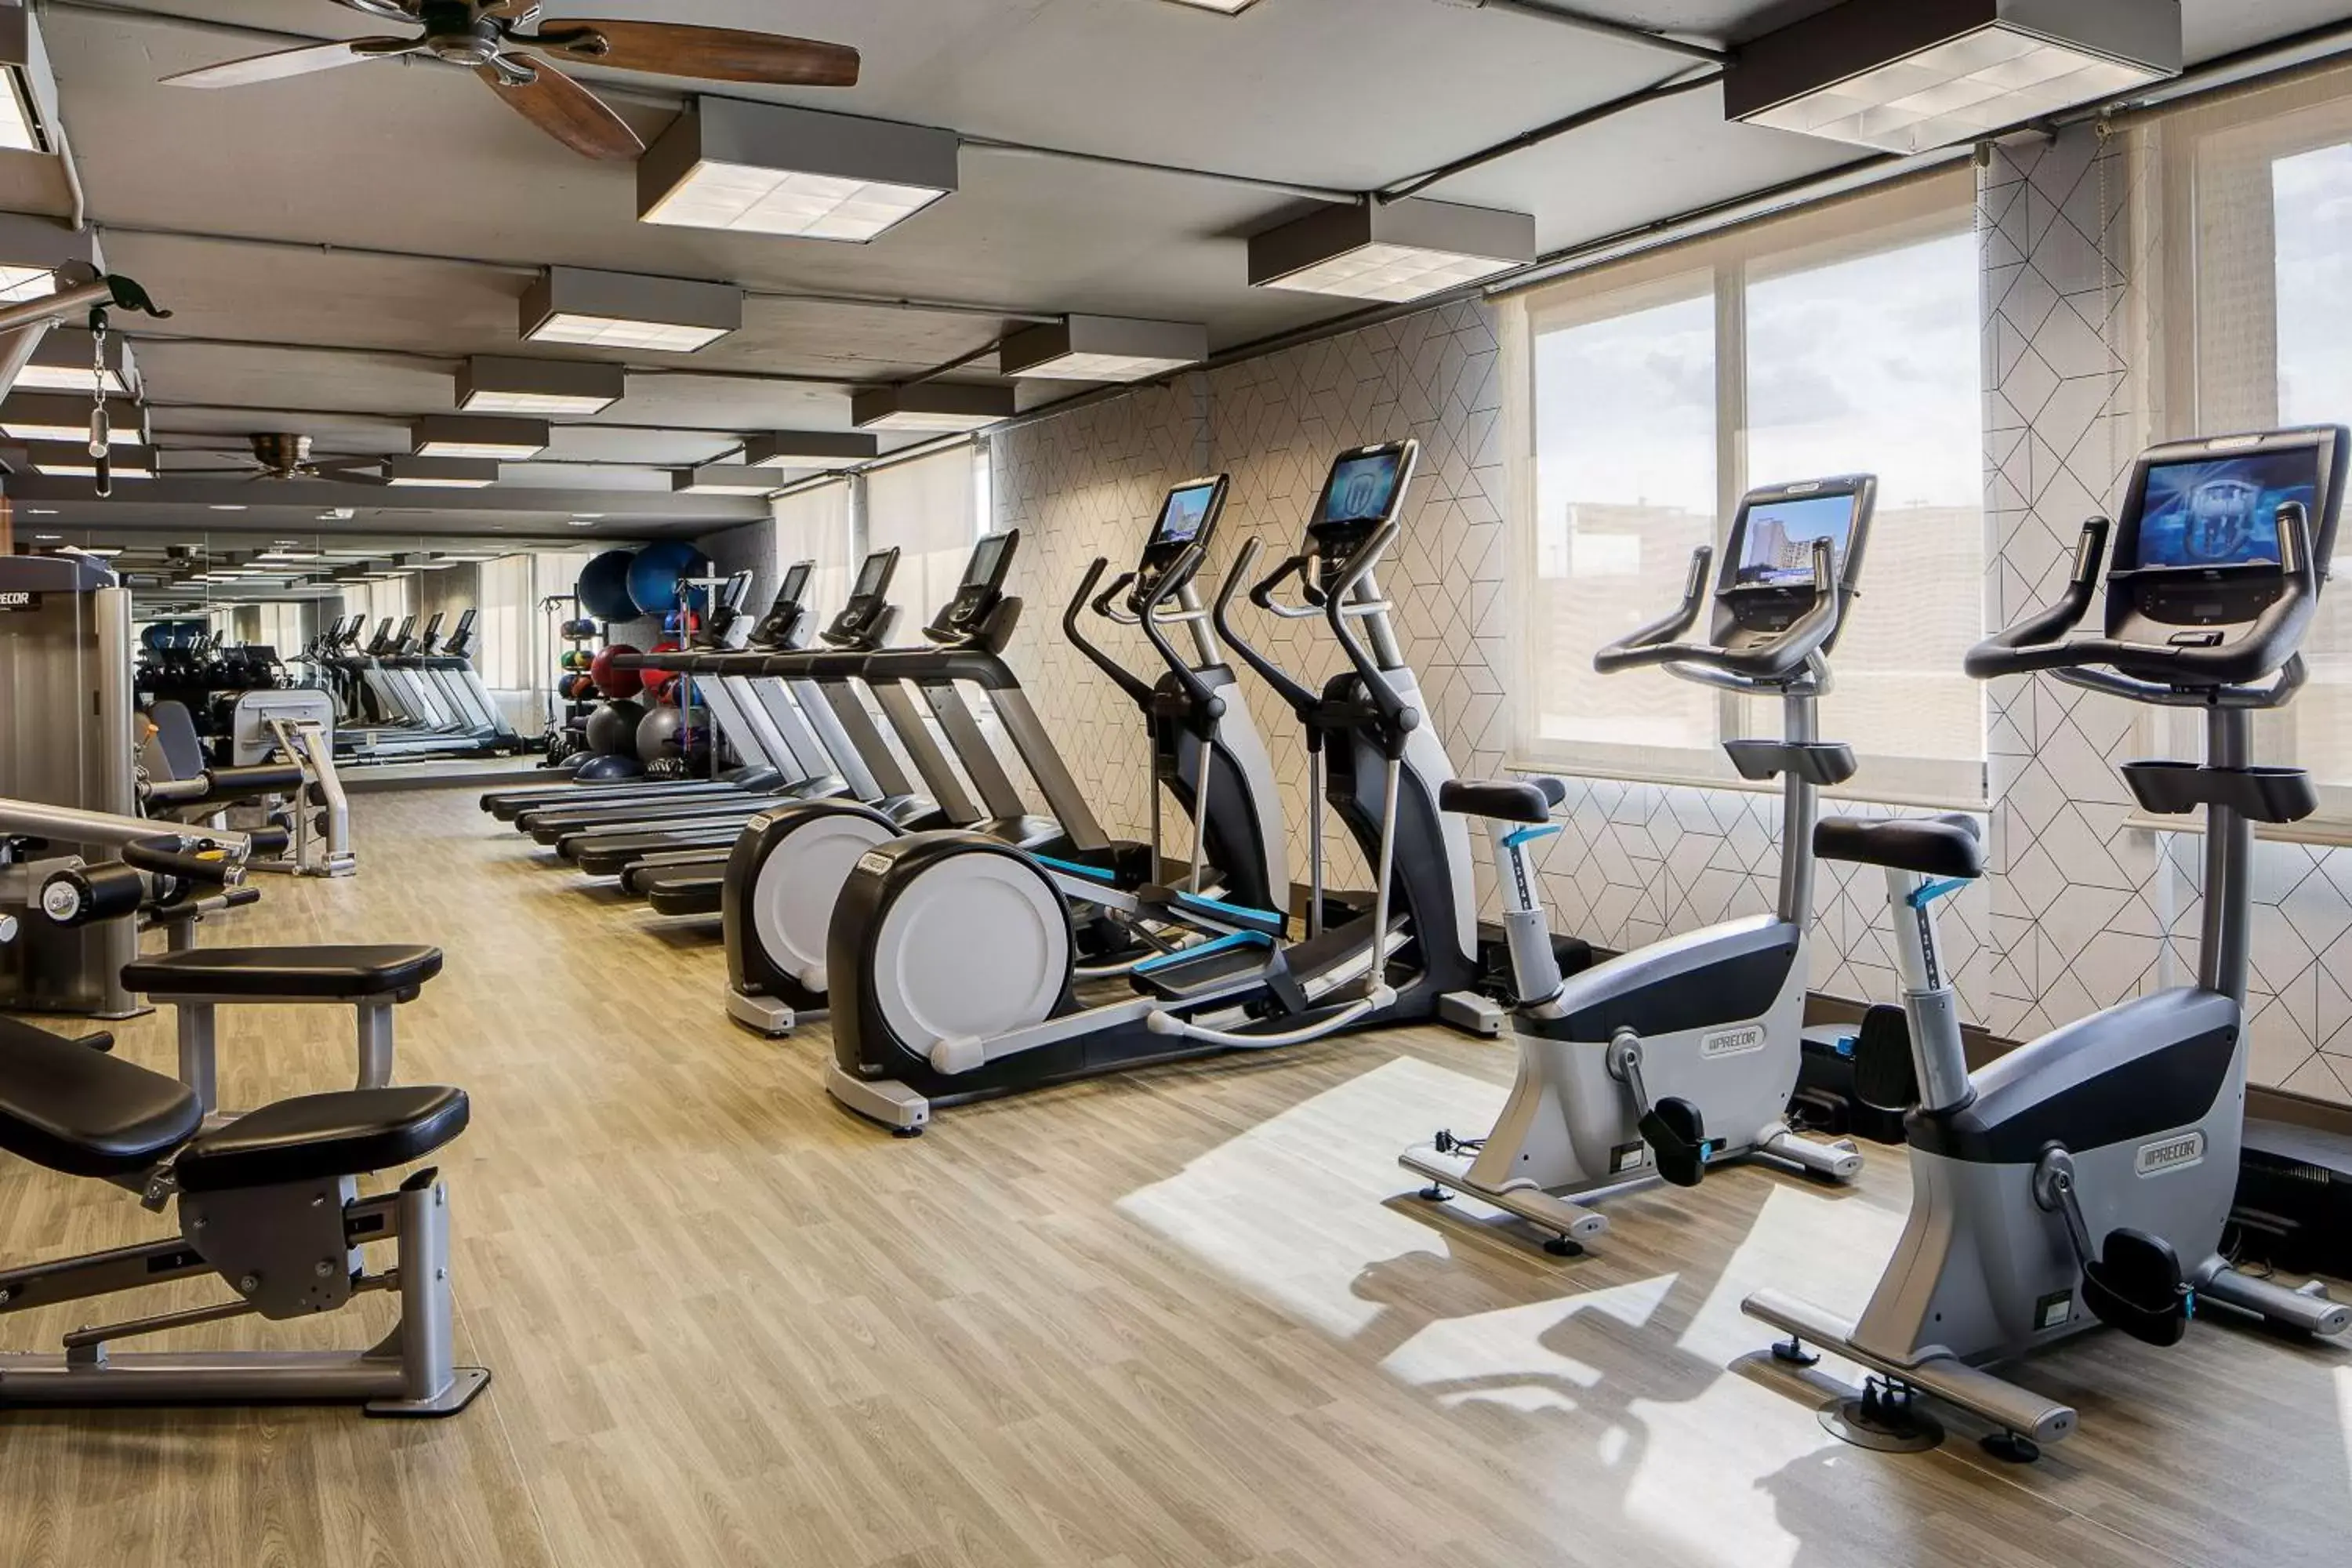 Fitness centre/facilities, Fitness Center/Facilities in Hyatt Regency DFW International Airport